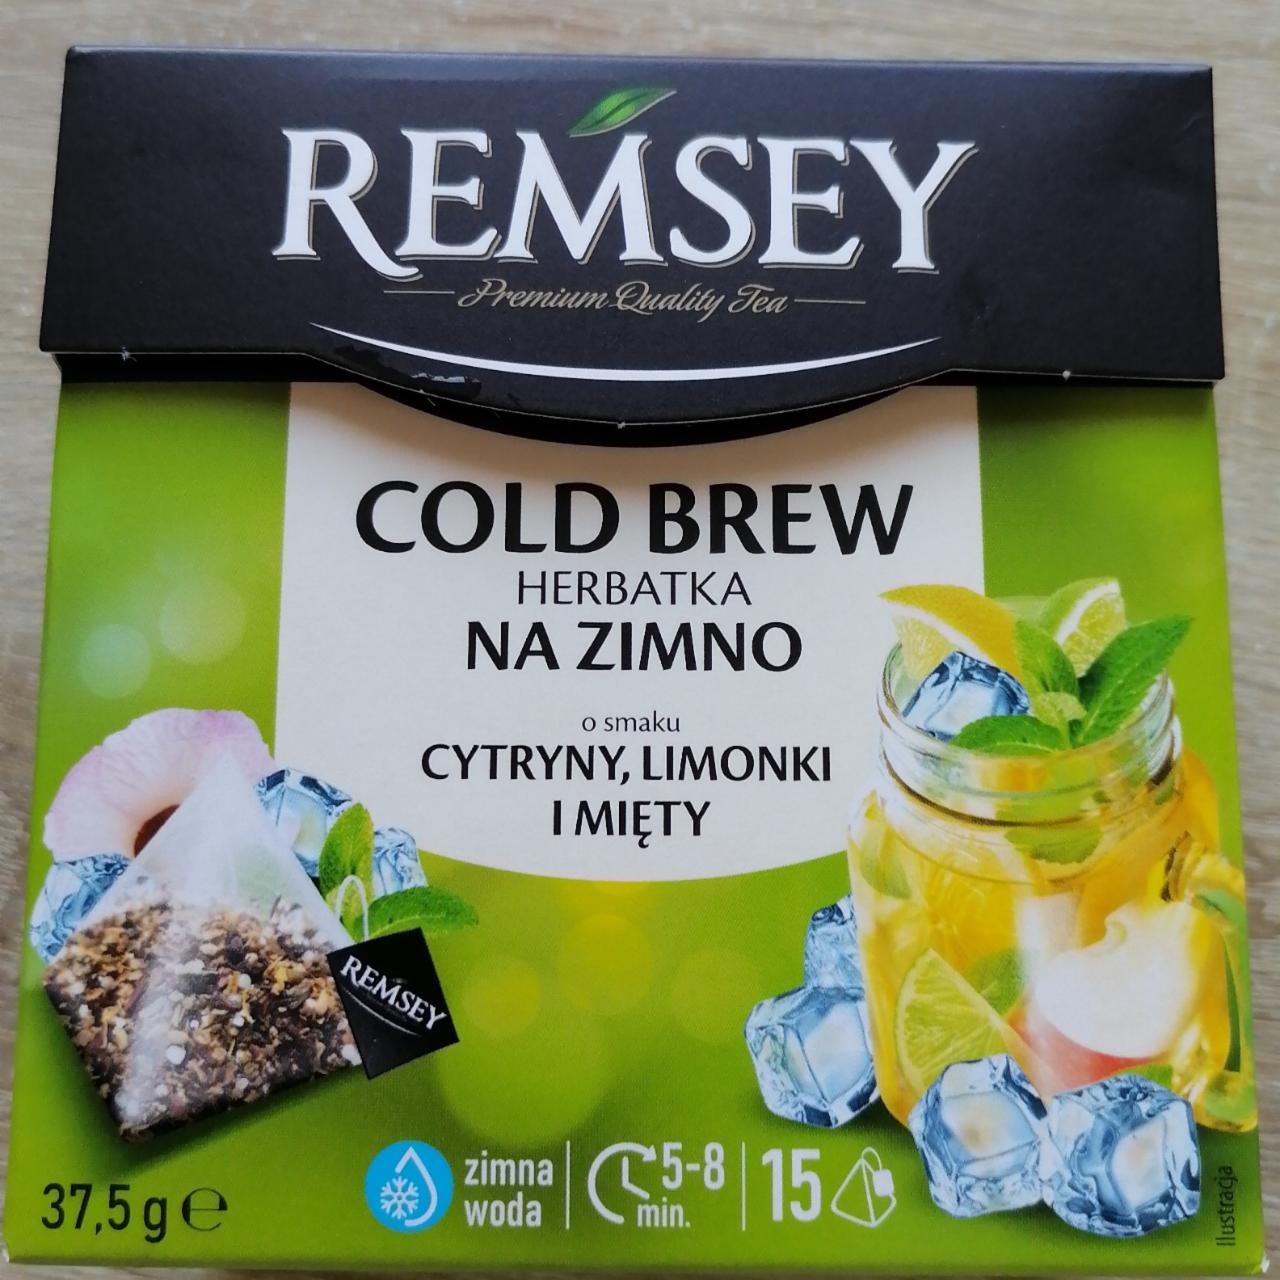 Fotografie - Cold brew na zimno cytryny limonki i mięty Remsey